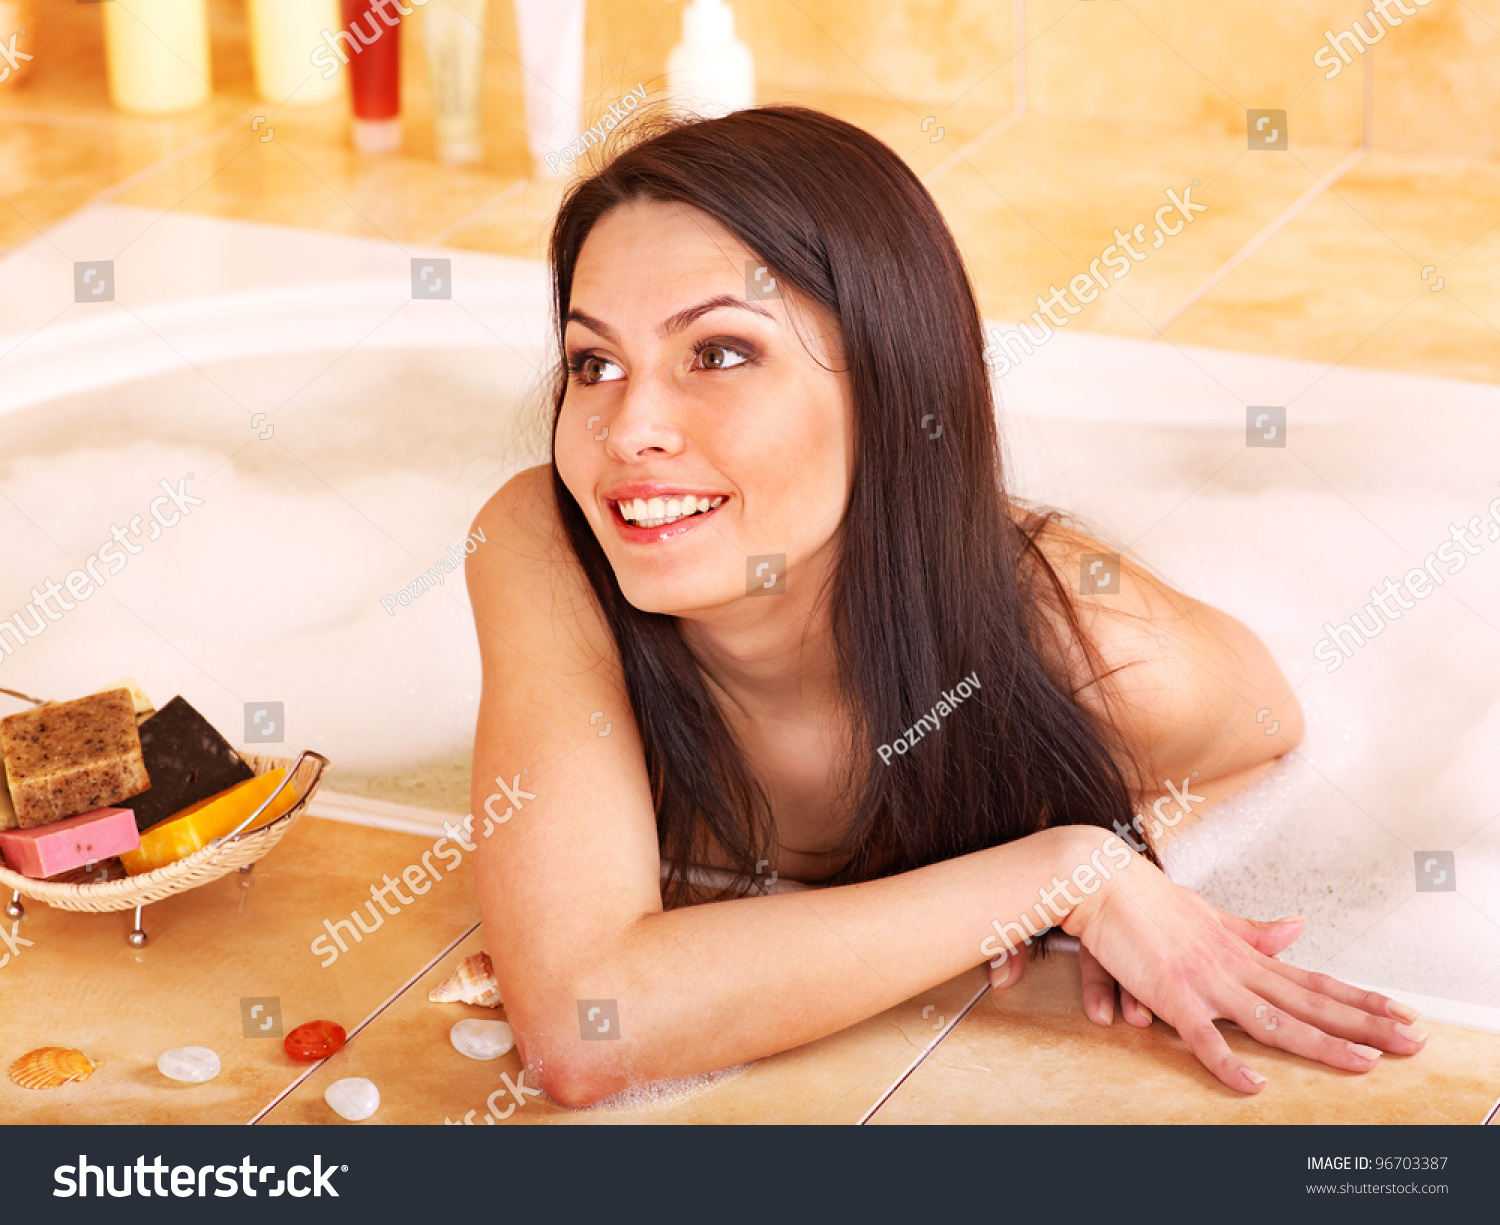 Young Woman Take Bubble Bath Stock Photo 96703387